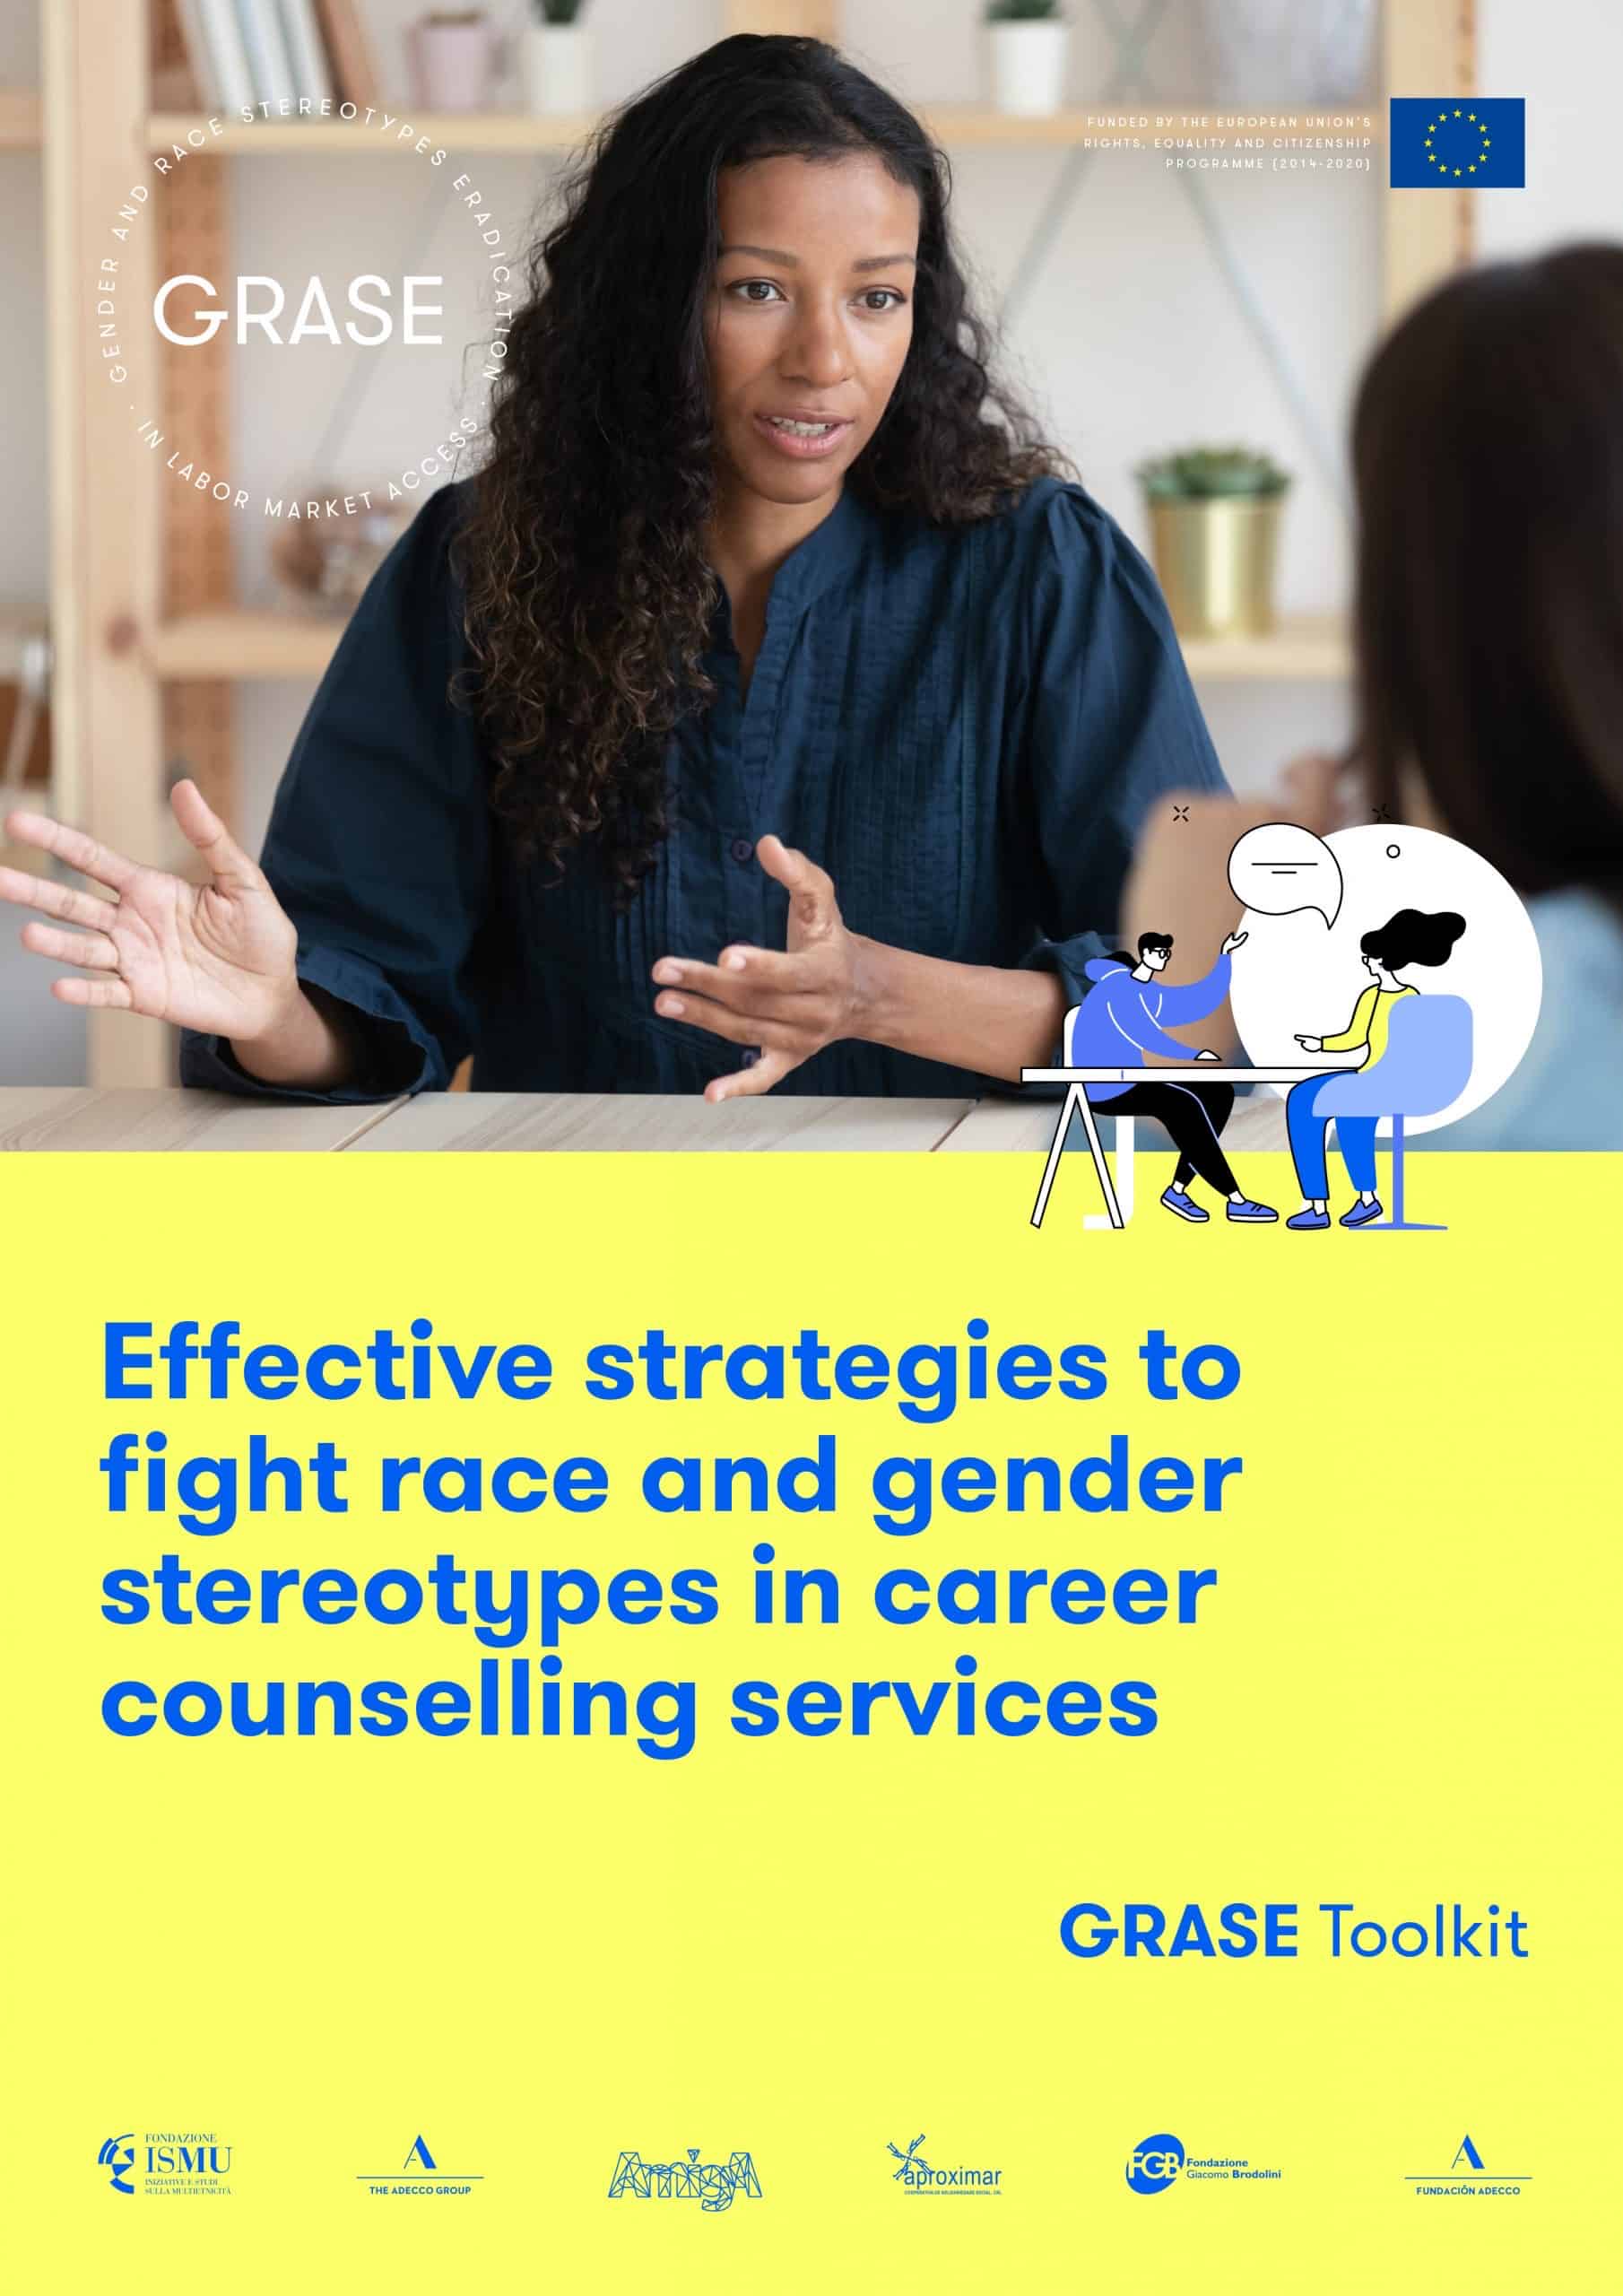 Portada del kit de herramientas "Estrategias eficaces para luchar contra estereotipos de raza y género en servicios de orientación laboral.